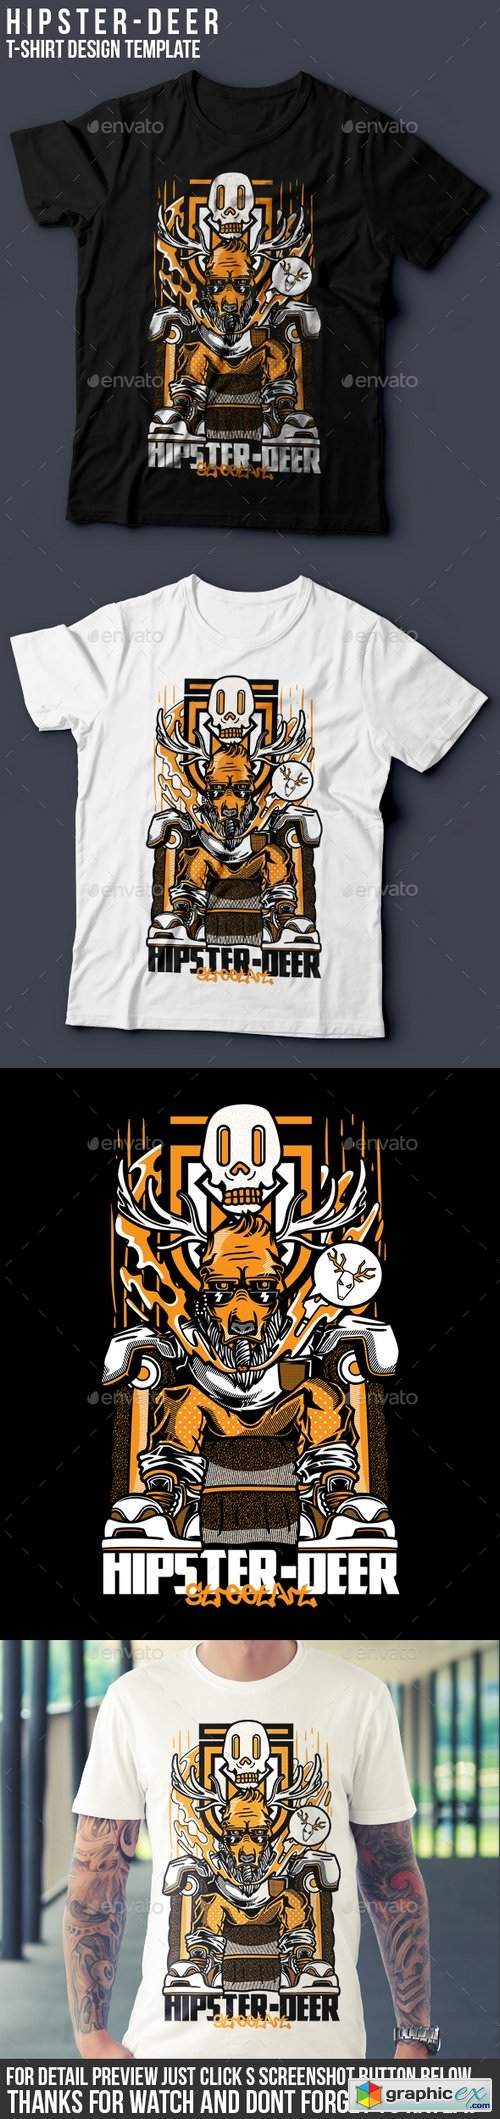 Hipster-Deer T-Shirt Design